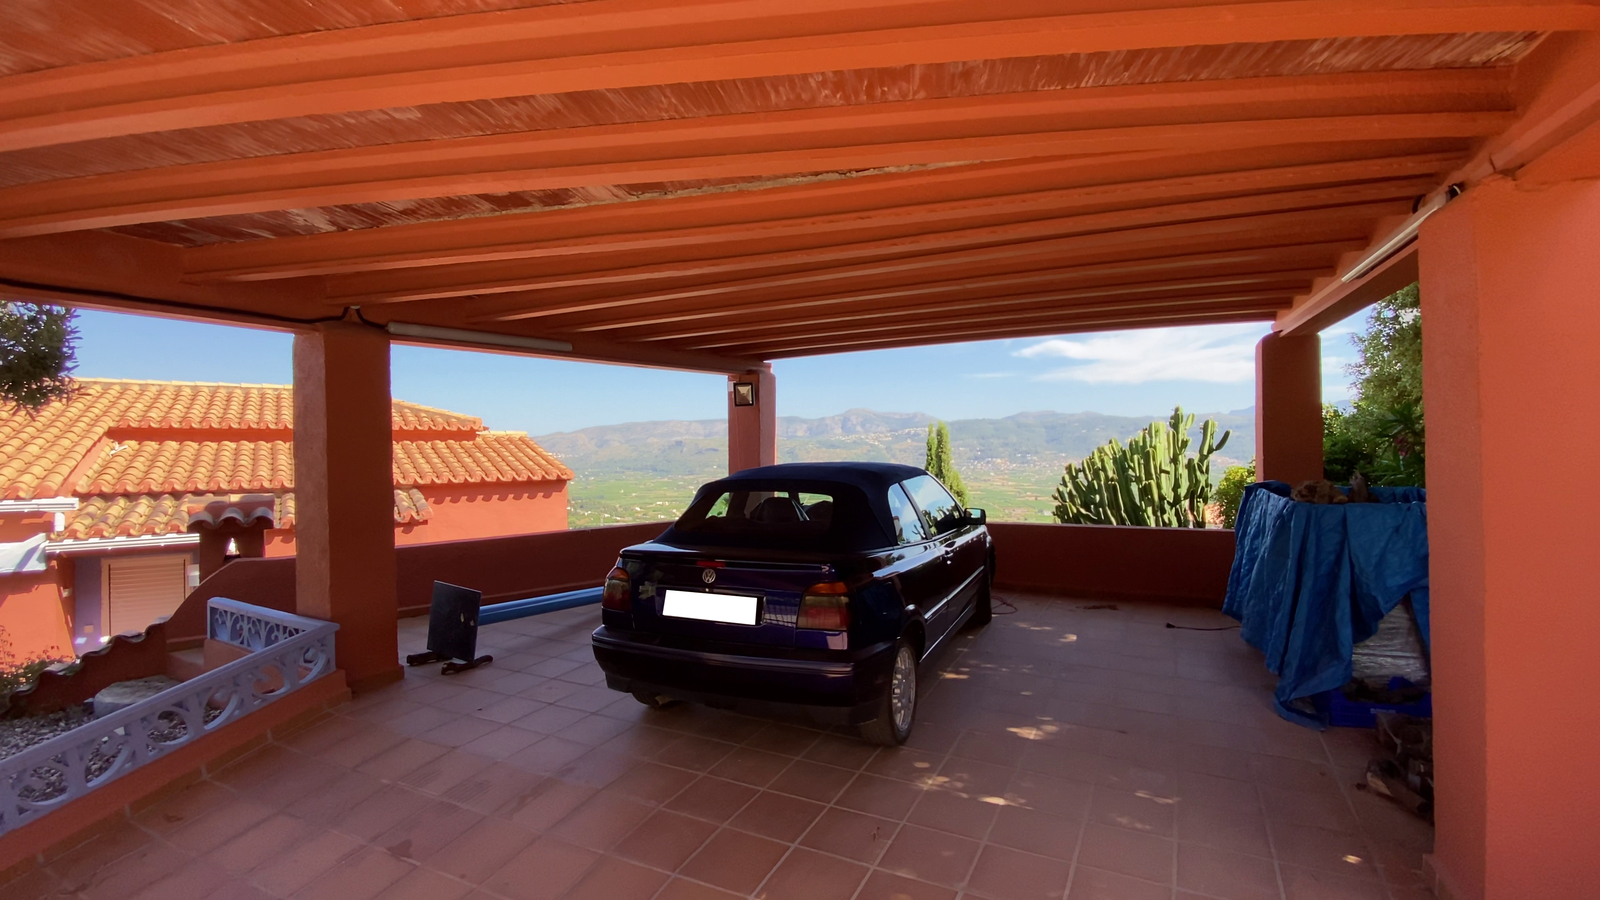 Villa mit 2 Wohneinheiten und unverbaubaren, einzigartigen Weitblick über das Tal von Orba, bis zum Mittelmeer